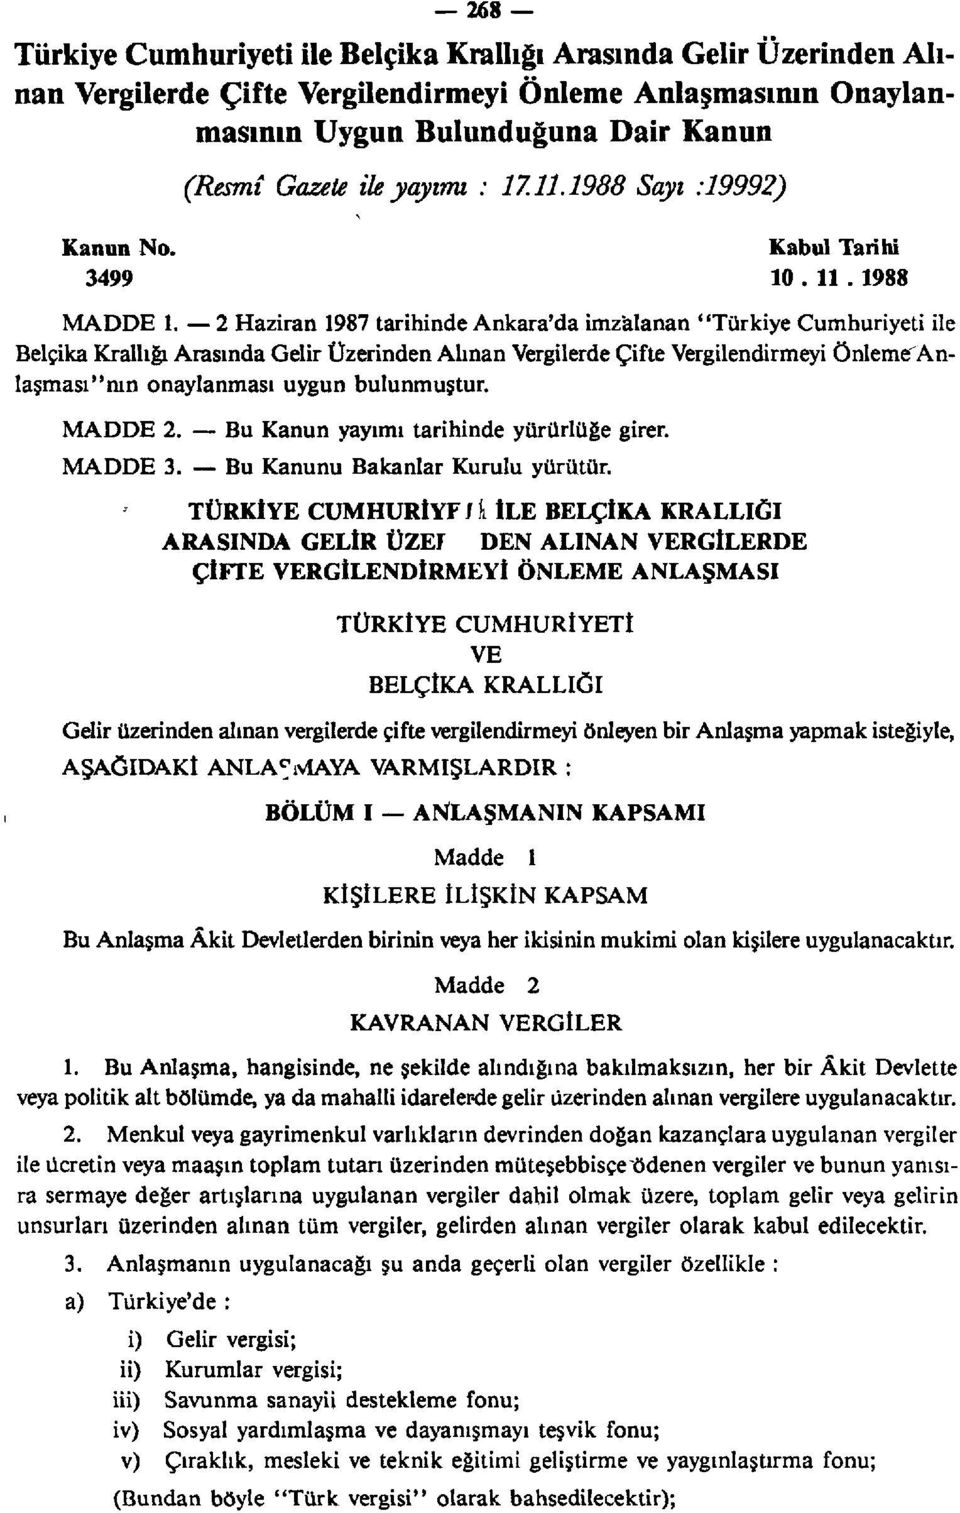 2 Haziran 1987 tarihinde Ankara'da imzalanan "Türkiye Cumhuriyeti ile Belçika Krallığı Arasında Gelir Üzerinden Alınan Vergilerde Çifte Vergilendirmeyi önlemefanlaşması"mn onaylanması uygun